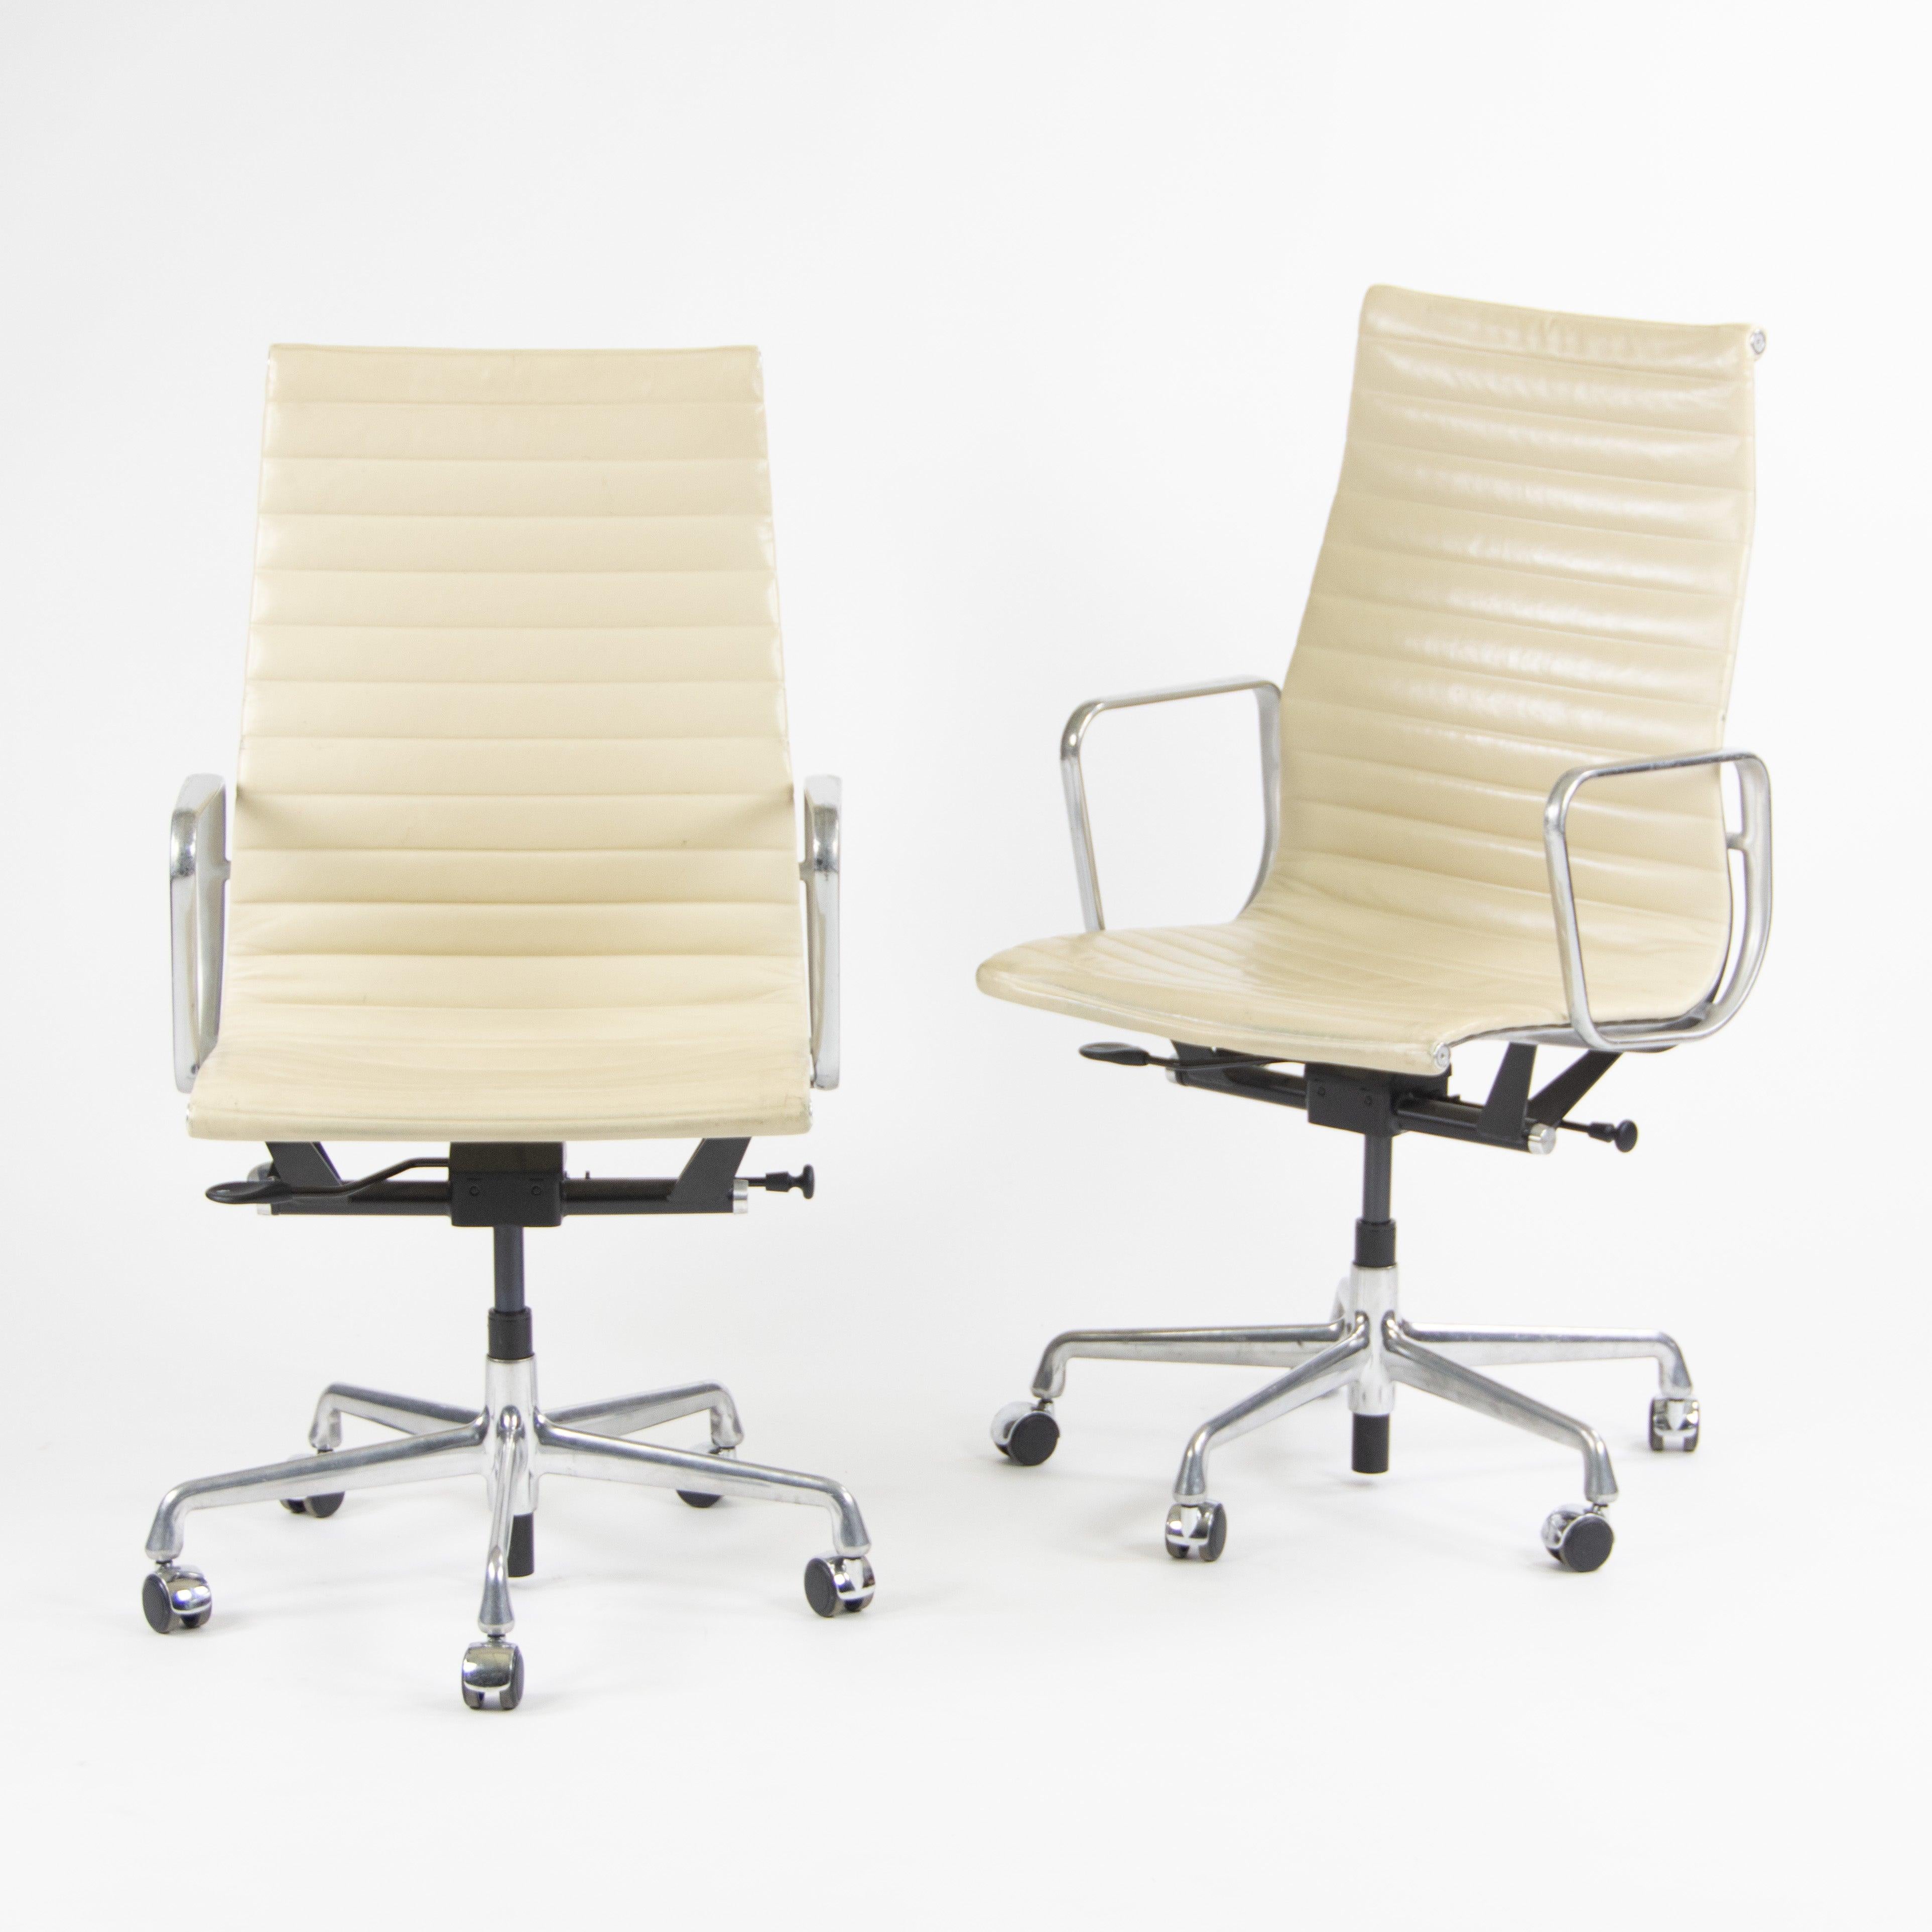 
Zum Verkauf angeboten wird eine Reihe von (separat verkauft) Eames Herman Miller Aluminium-Gruppe Executive hohen Rücken Schreibtischstühle mit Elfenbein / Creme Leder (off-white) Polsterung Diese wunderschönen Stühle kamen aus einer